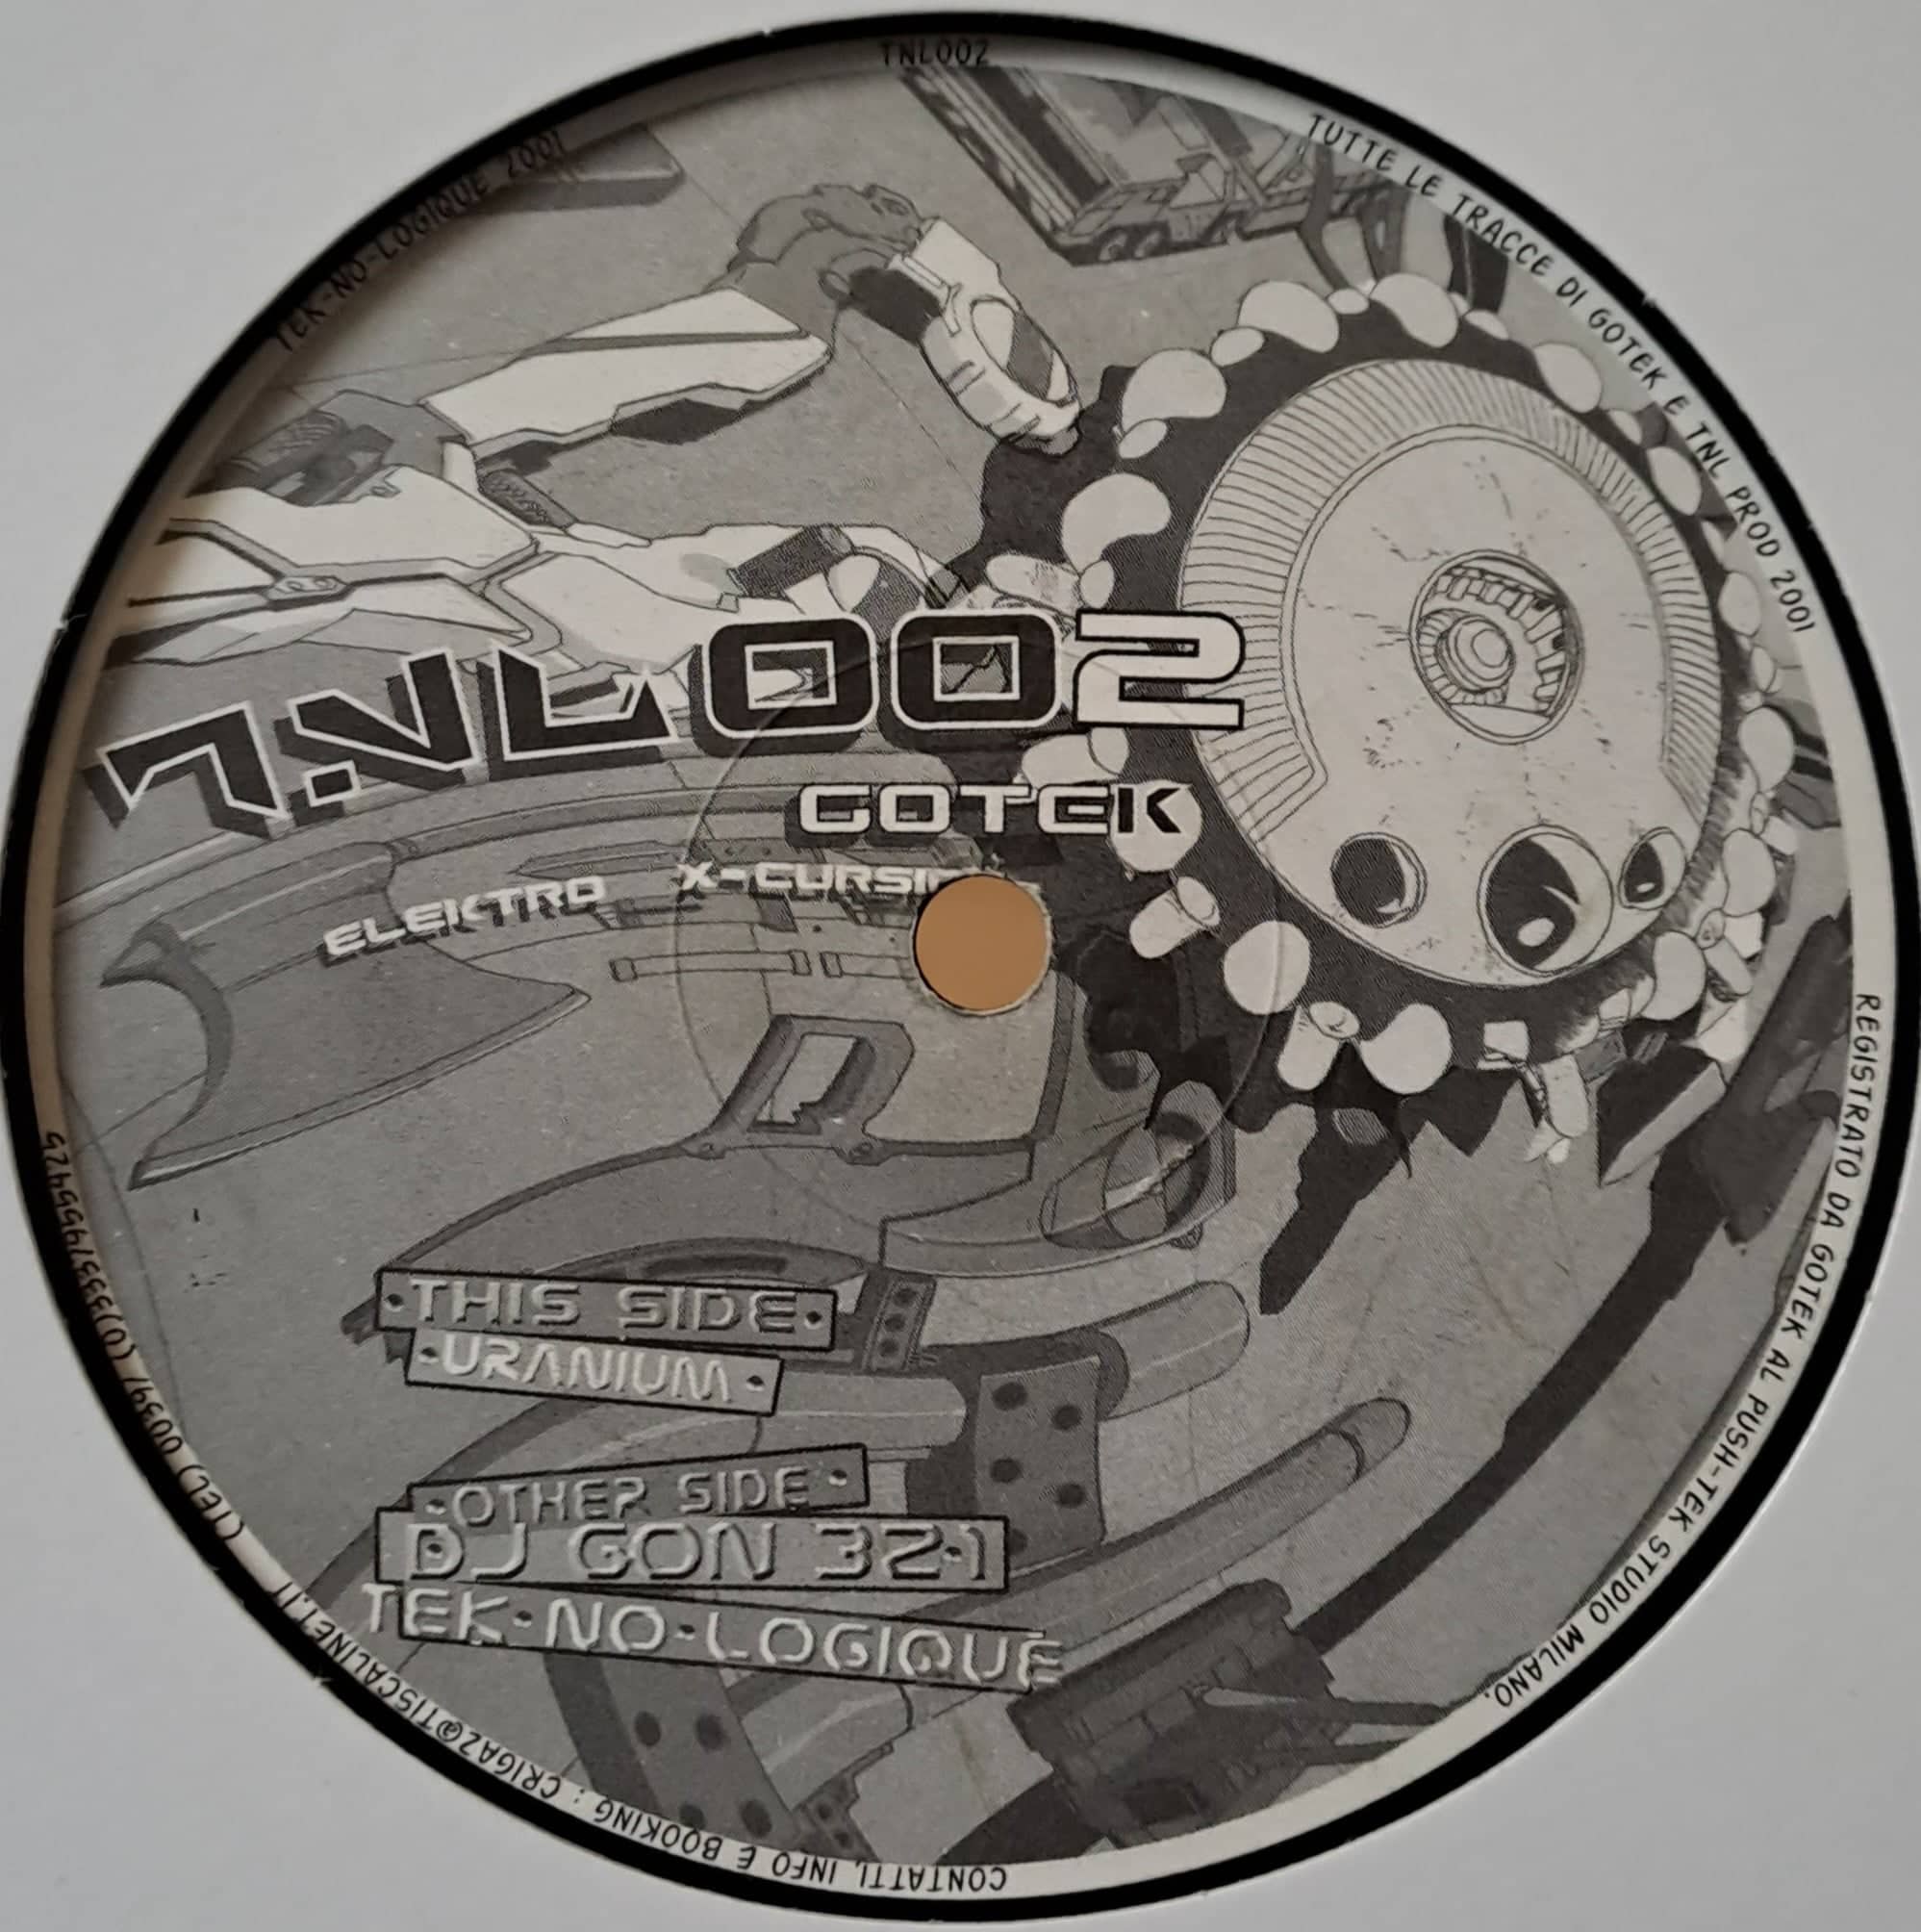 1) Tek No Logique 02 - vinyle freetekno